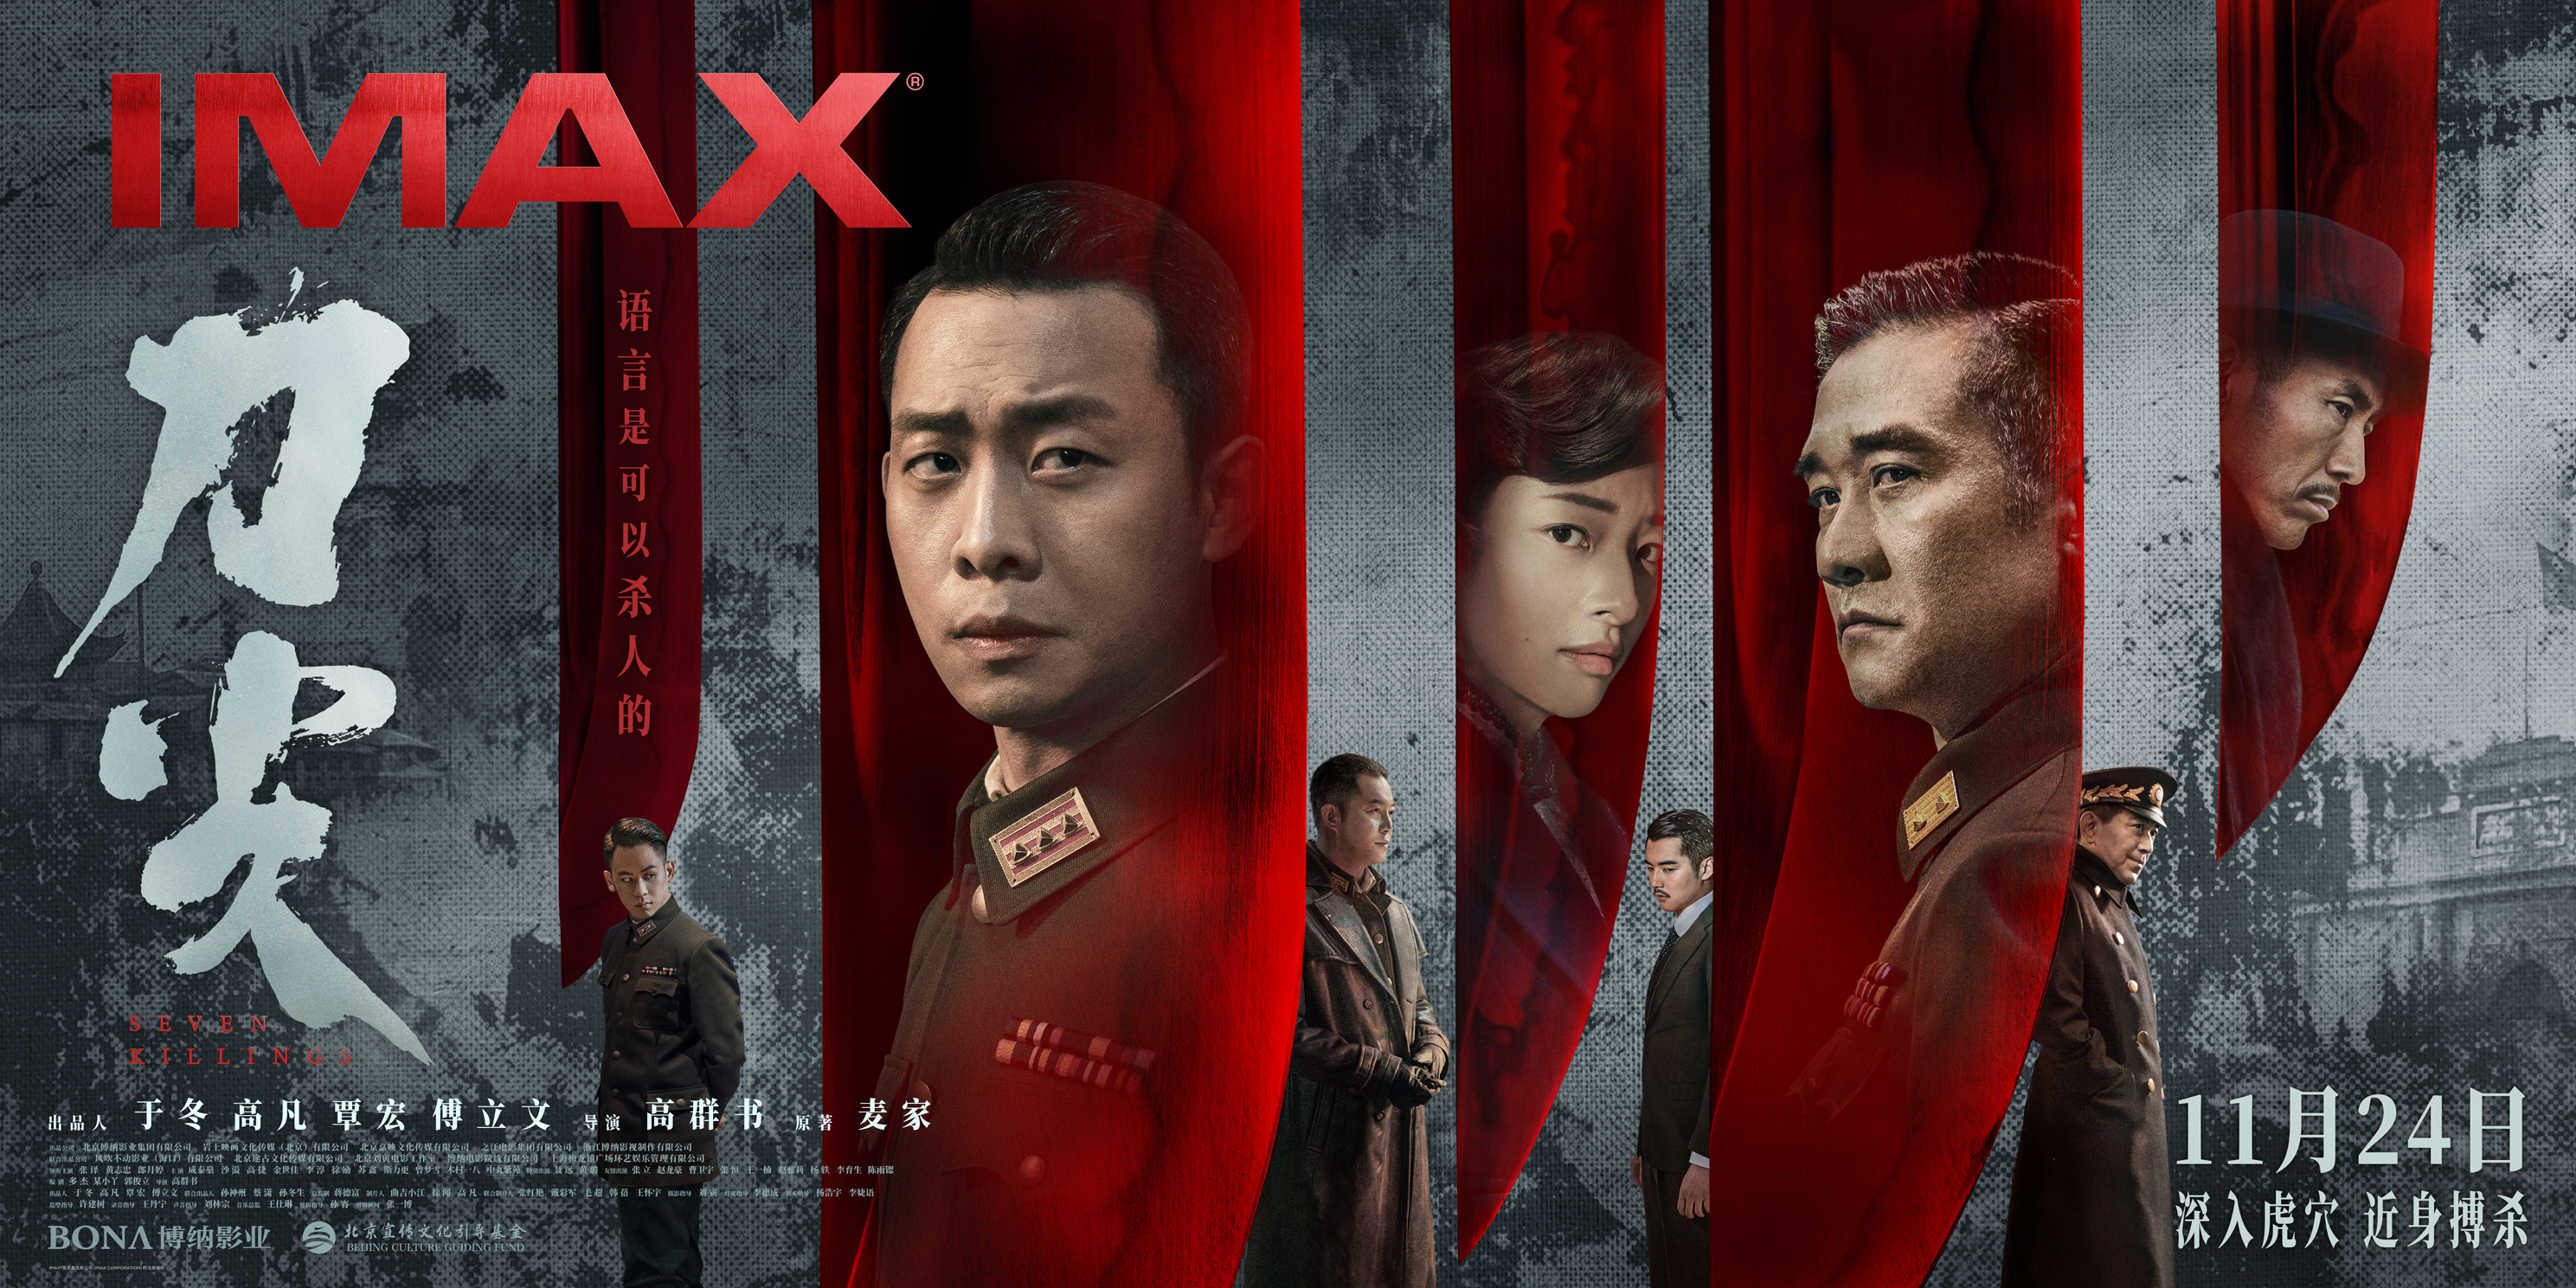 谍战电影《刀尖》11月24日登陆IMAX®影院 张译“刀尖”行走深入虎穴